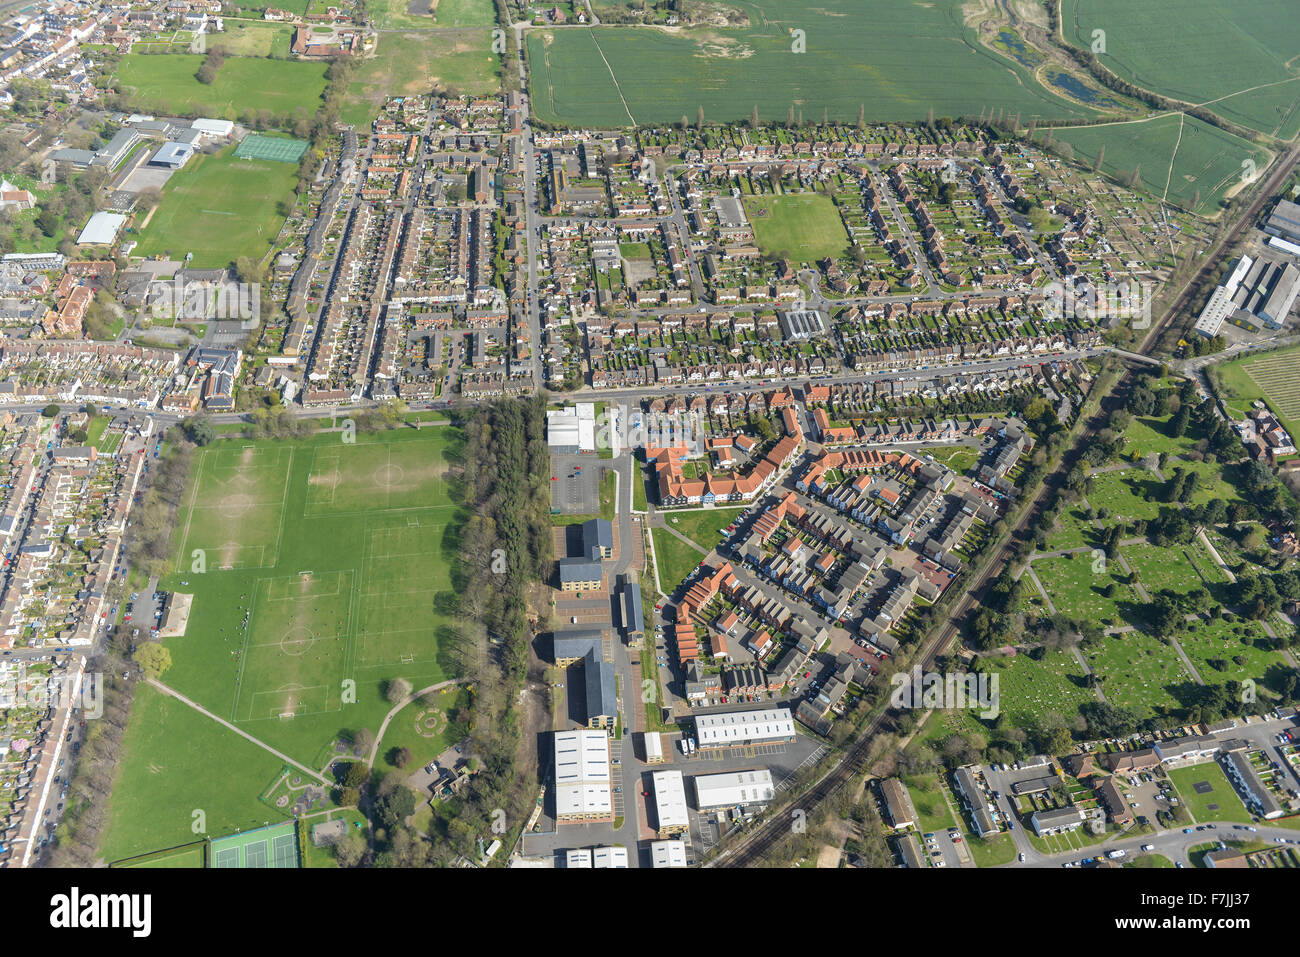 Une vue aérienne de Faversham, une ville du marché dans le Kent, UK Banque D'Images